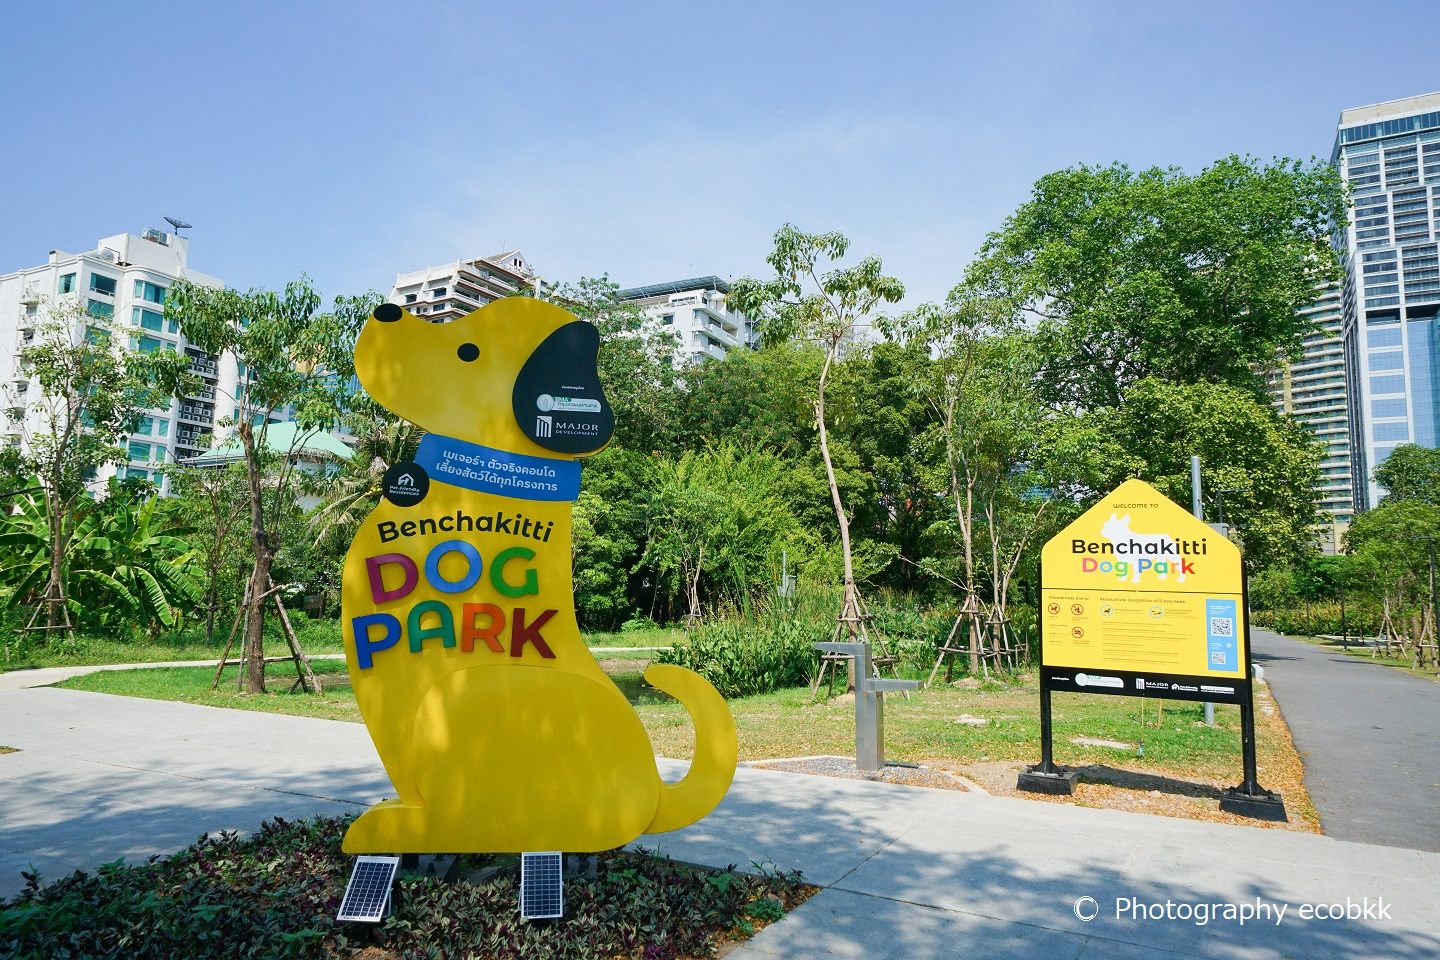 タイの首都バンコク、ベンジャキティ公園内にドッグパーク